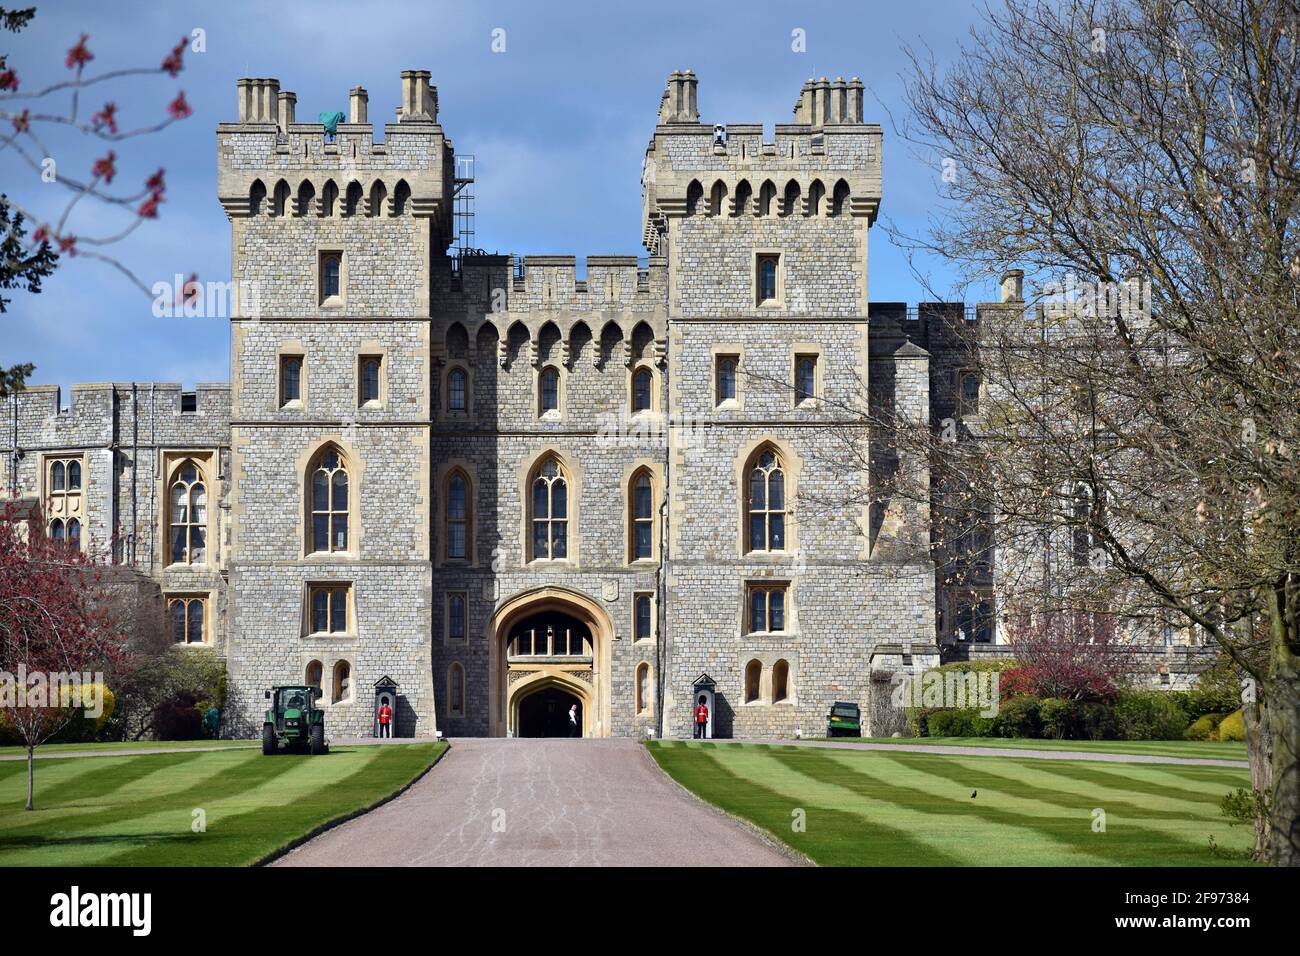 Windsor, Großbritannien, 16. April 2020 Schloss Windsor ist mit Touristen beschäftigt und bereitet sich auf die Beerdigung von Prinz Phillip, dem Herzog von Edinburgh, vor. Kredit: JOHNNY ARMSTEAD/Alamy Live Nachrichten Stockfoto